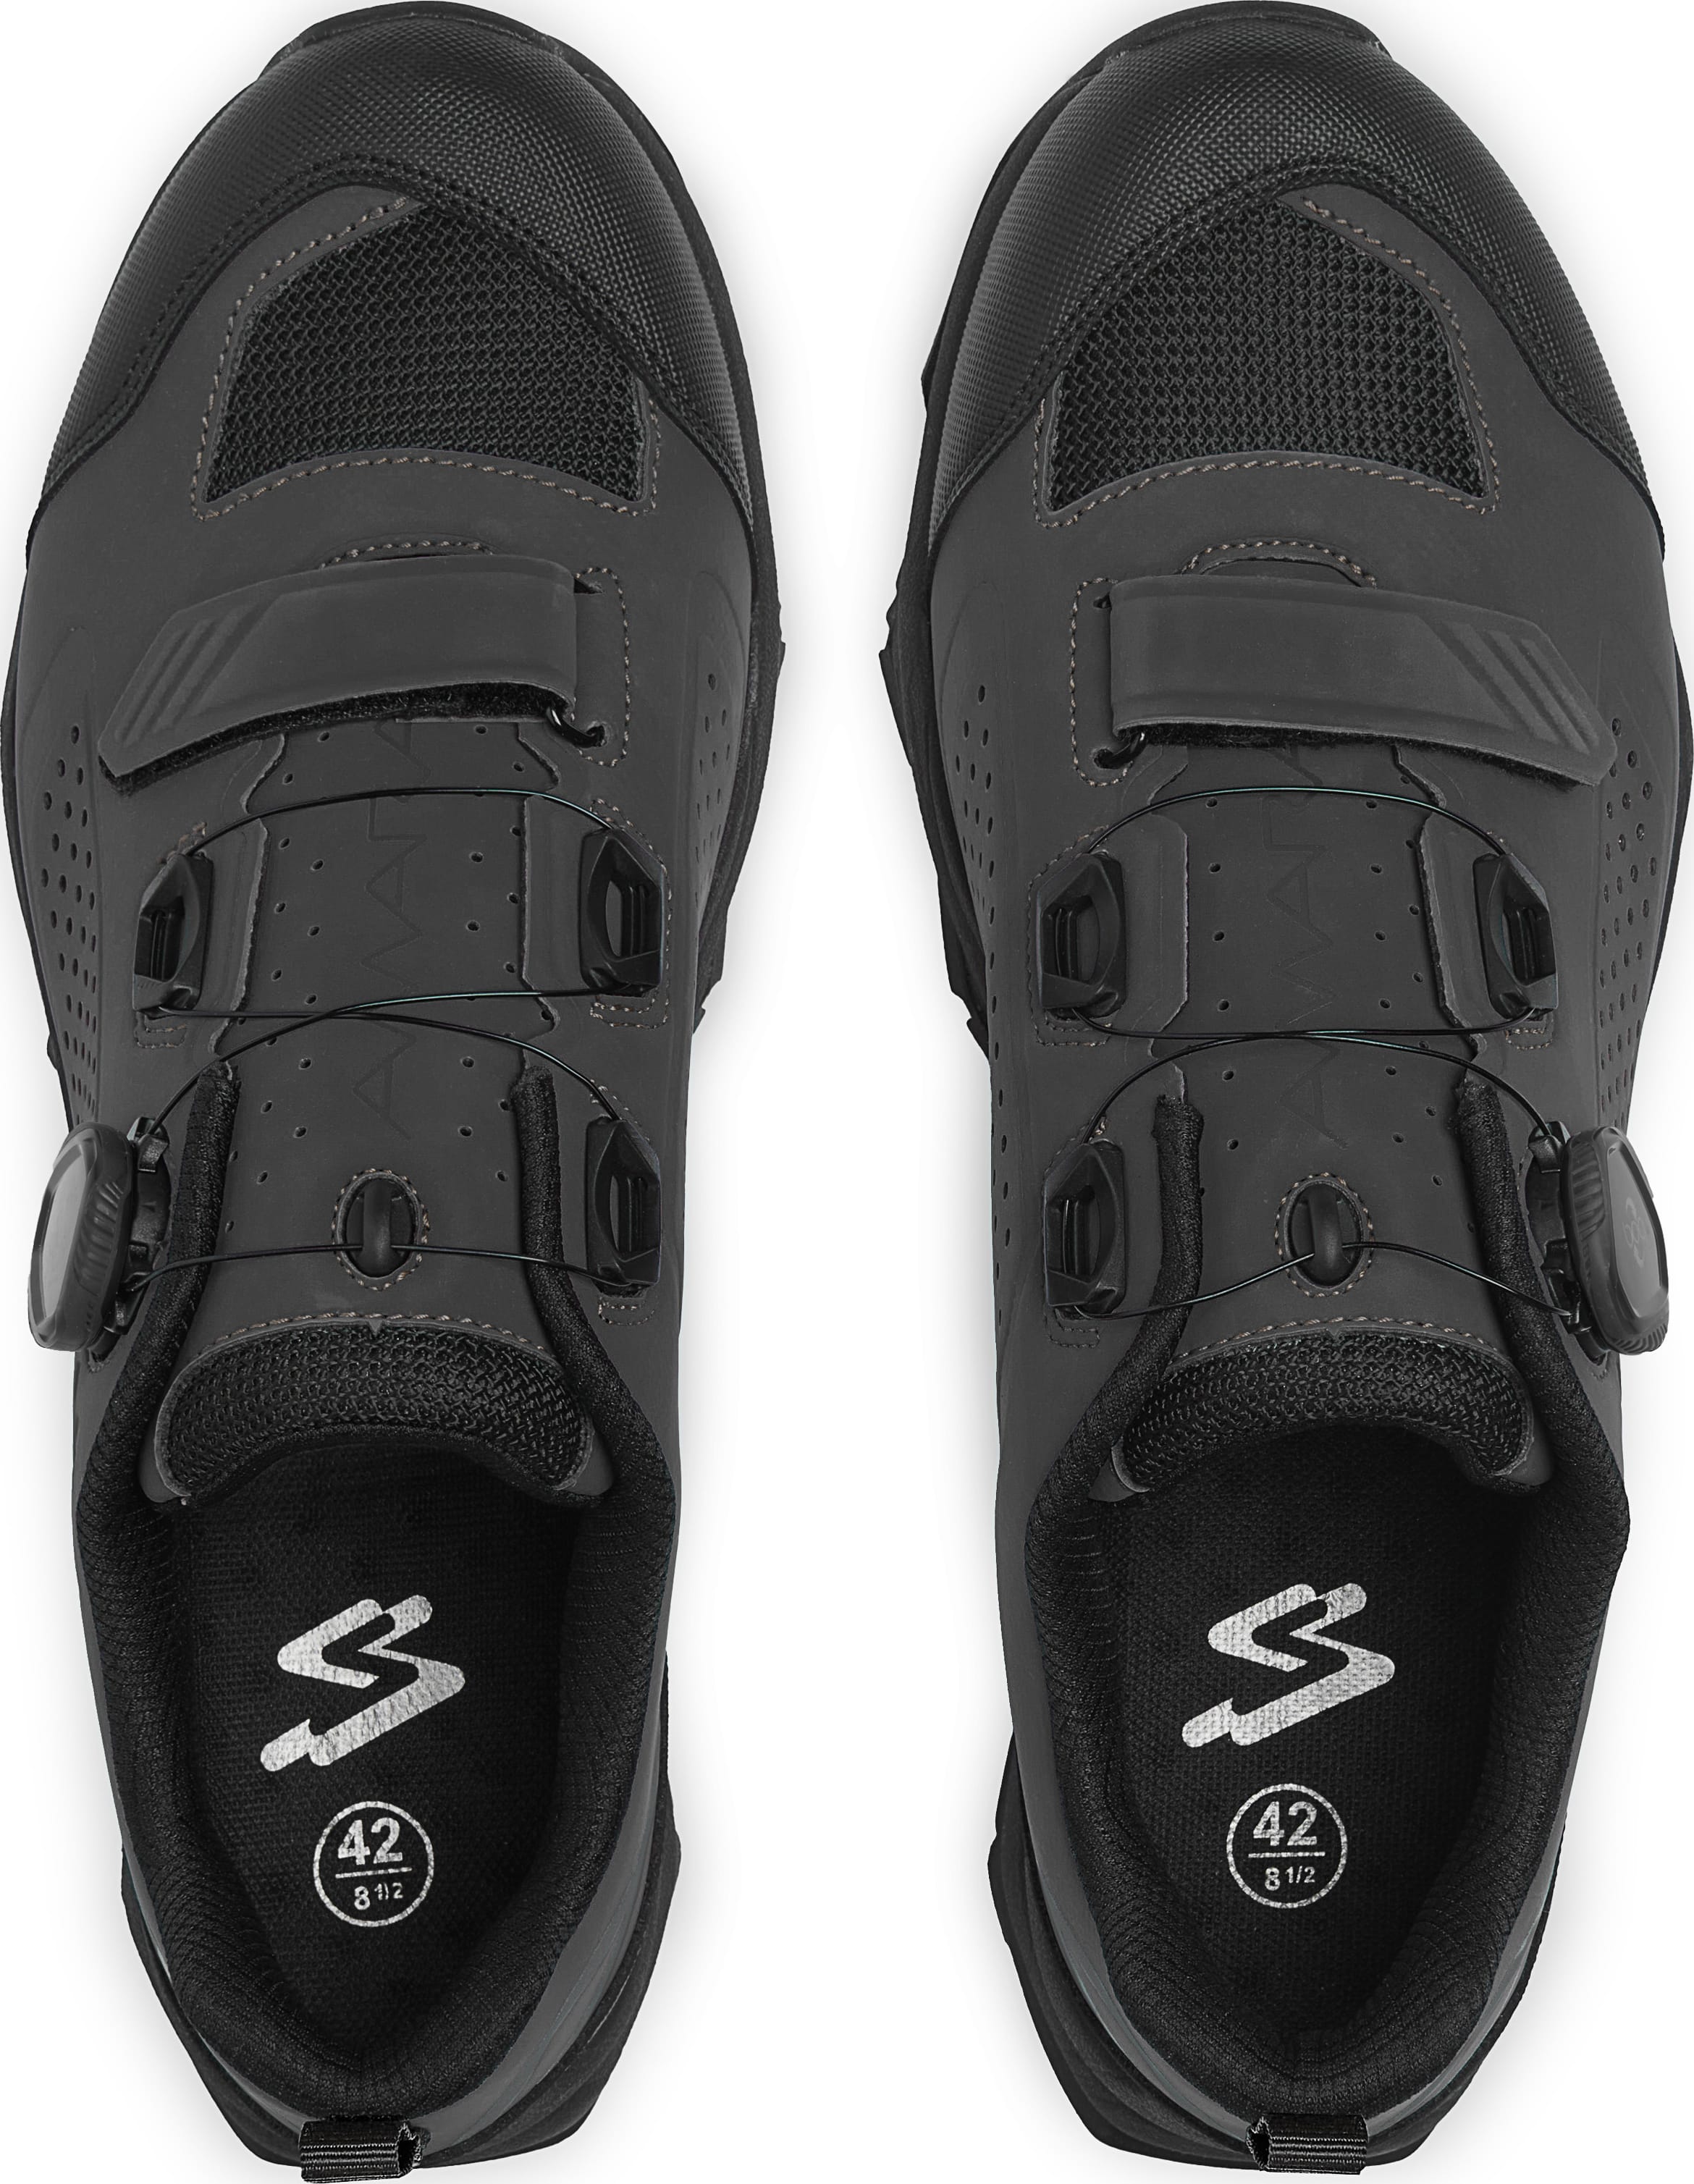 Взуття Spiuk Amara M2V MTB розмір UK 8 (42 260мм) чорне фото 2